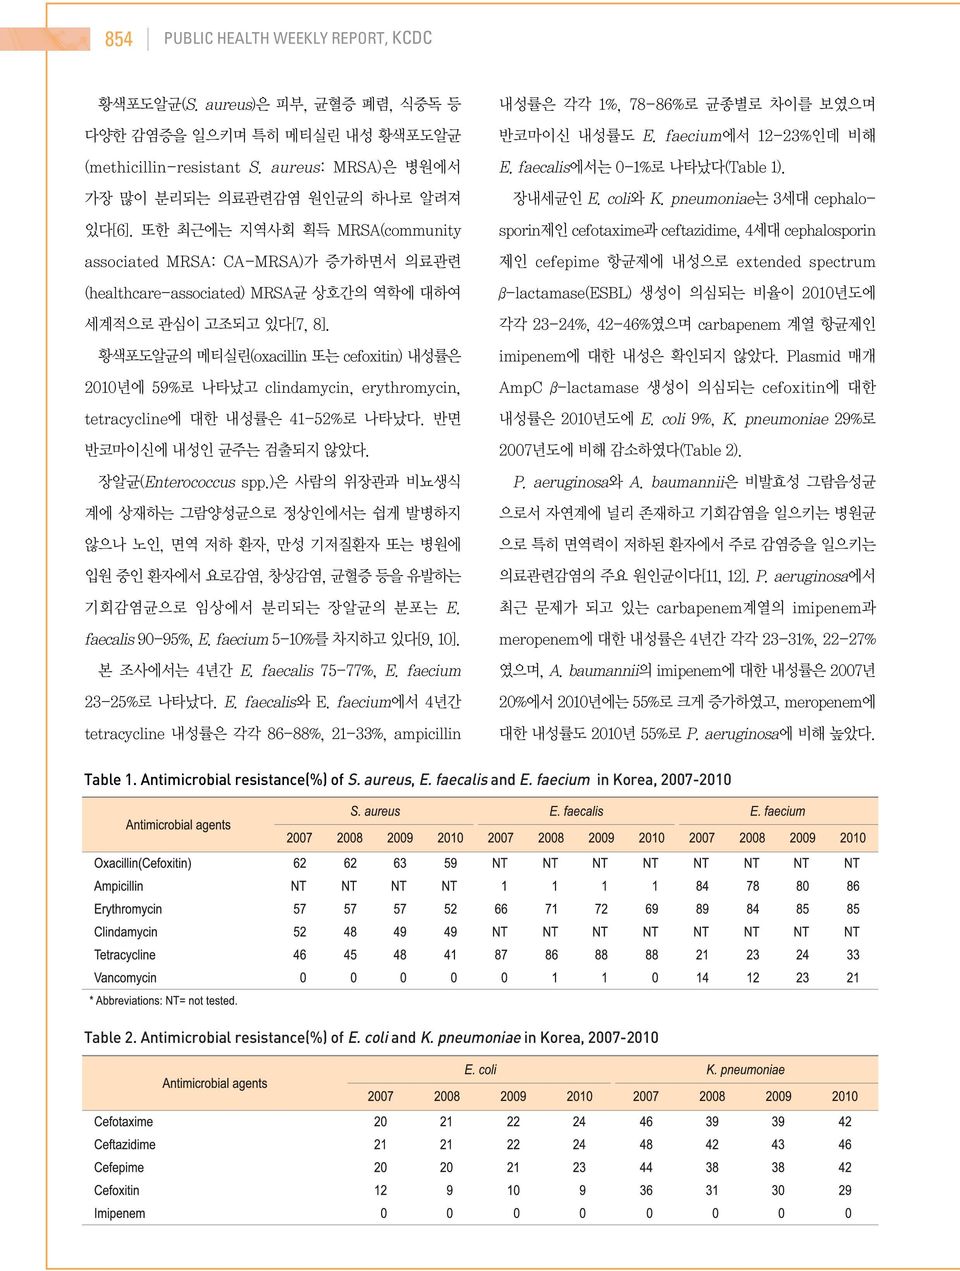 faecalis and E. faecium in Korea, 2007-2010 Table 2.